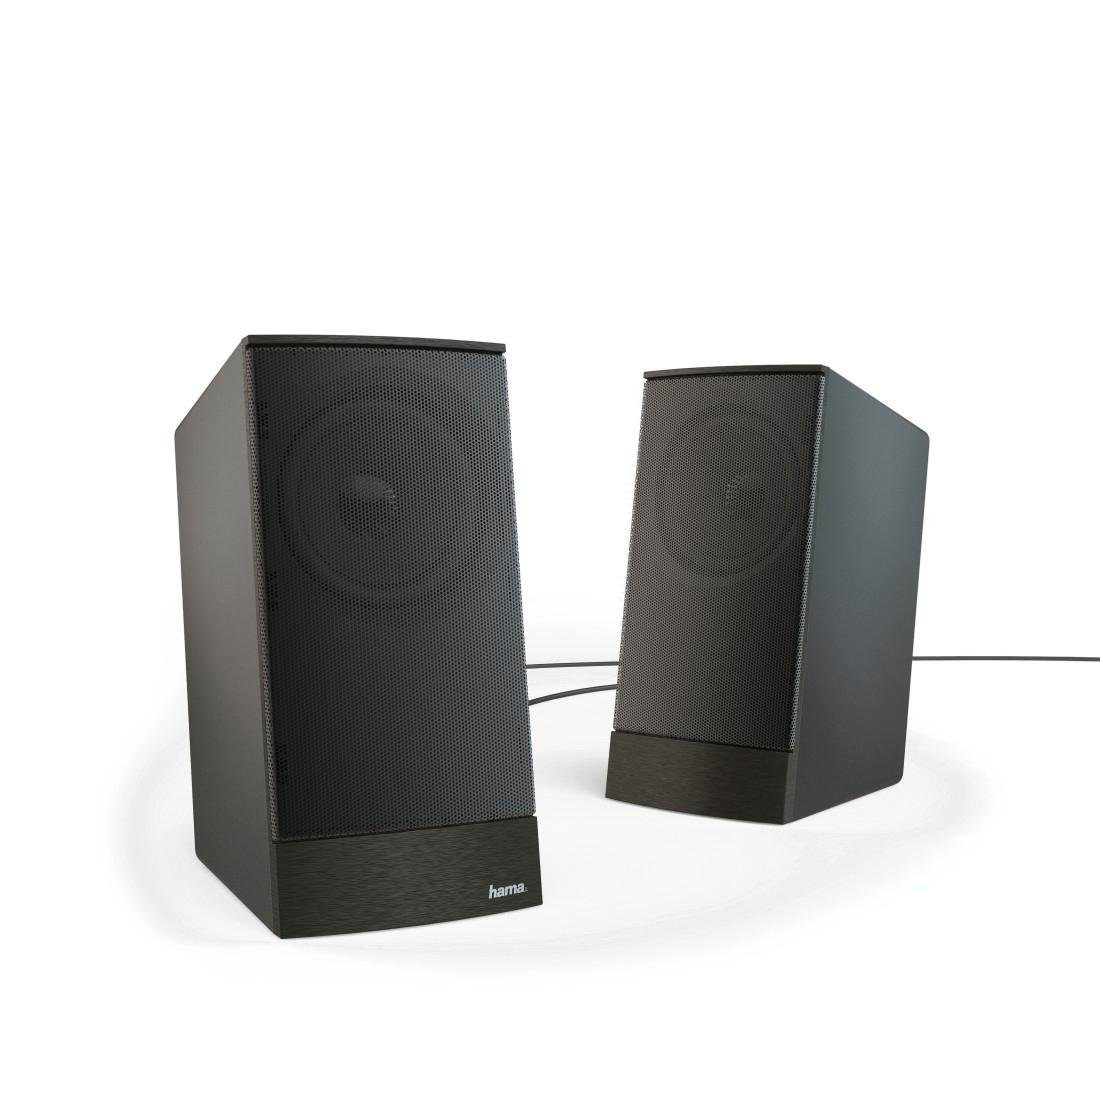 Hama PC Lautsprecher Boxen Set für PC oder Notebook, Farbe Schwarz PC-Lautsprecher (8 W, Lautsprecherregelung, 3,5 mm Klinkenstecker, externes Netzteil)